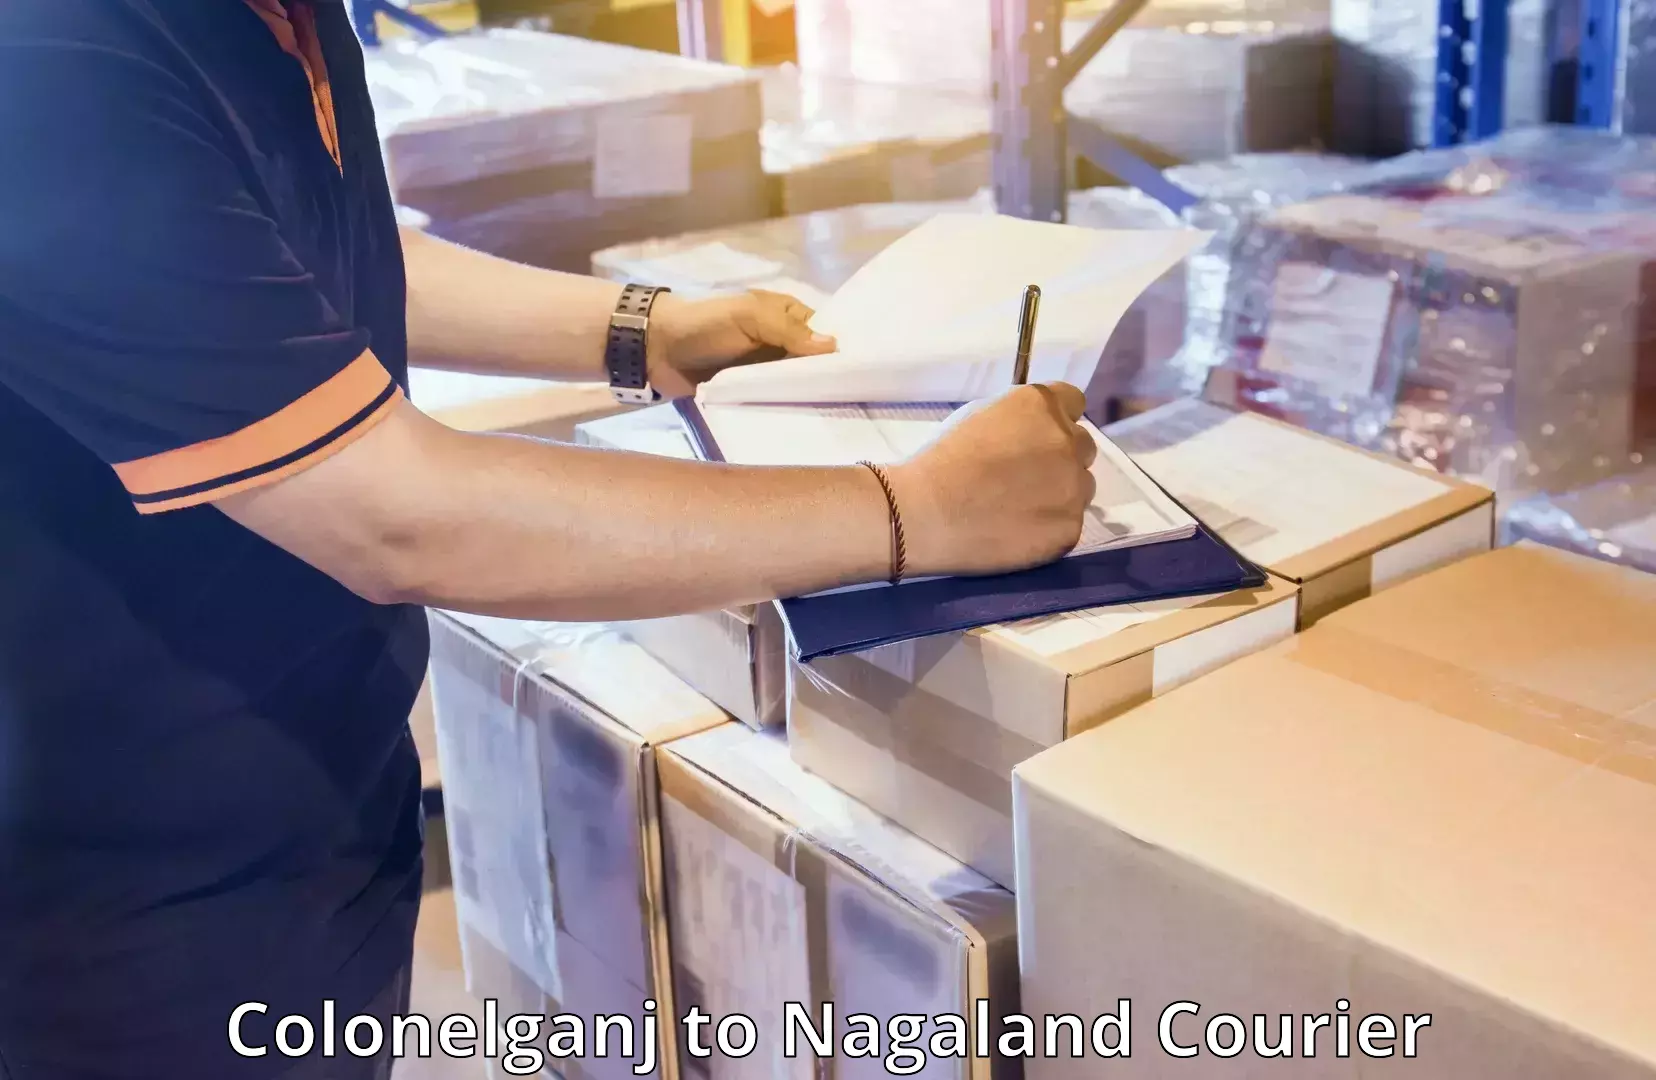 Luggage forwarding service Colonelganj to Nagaland